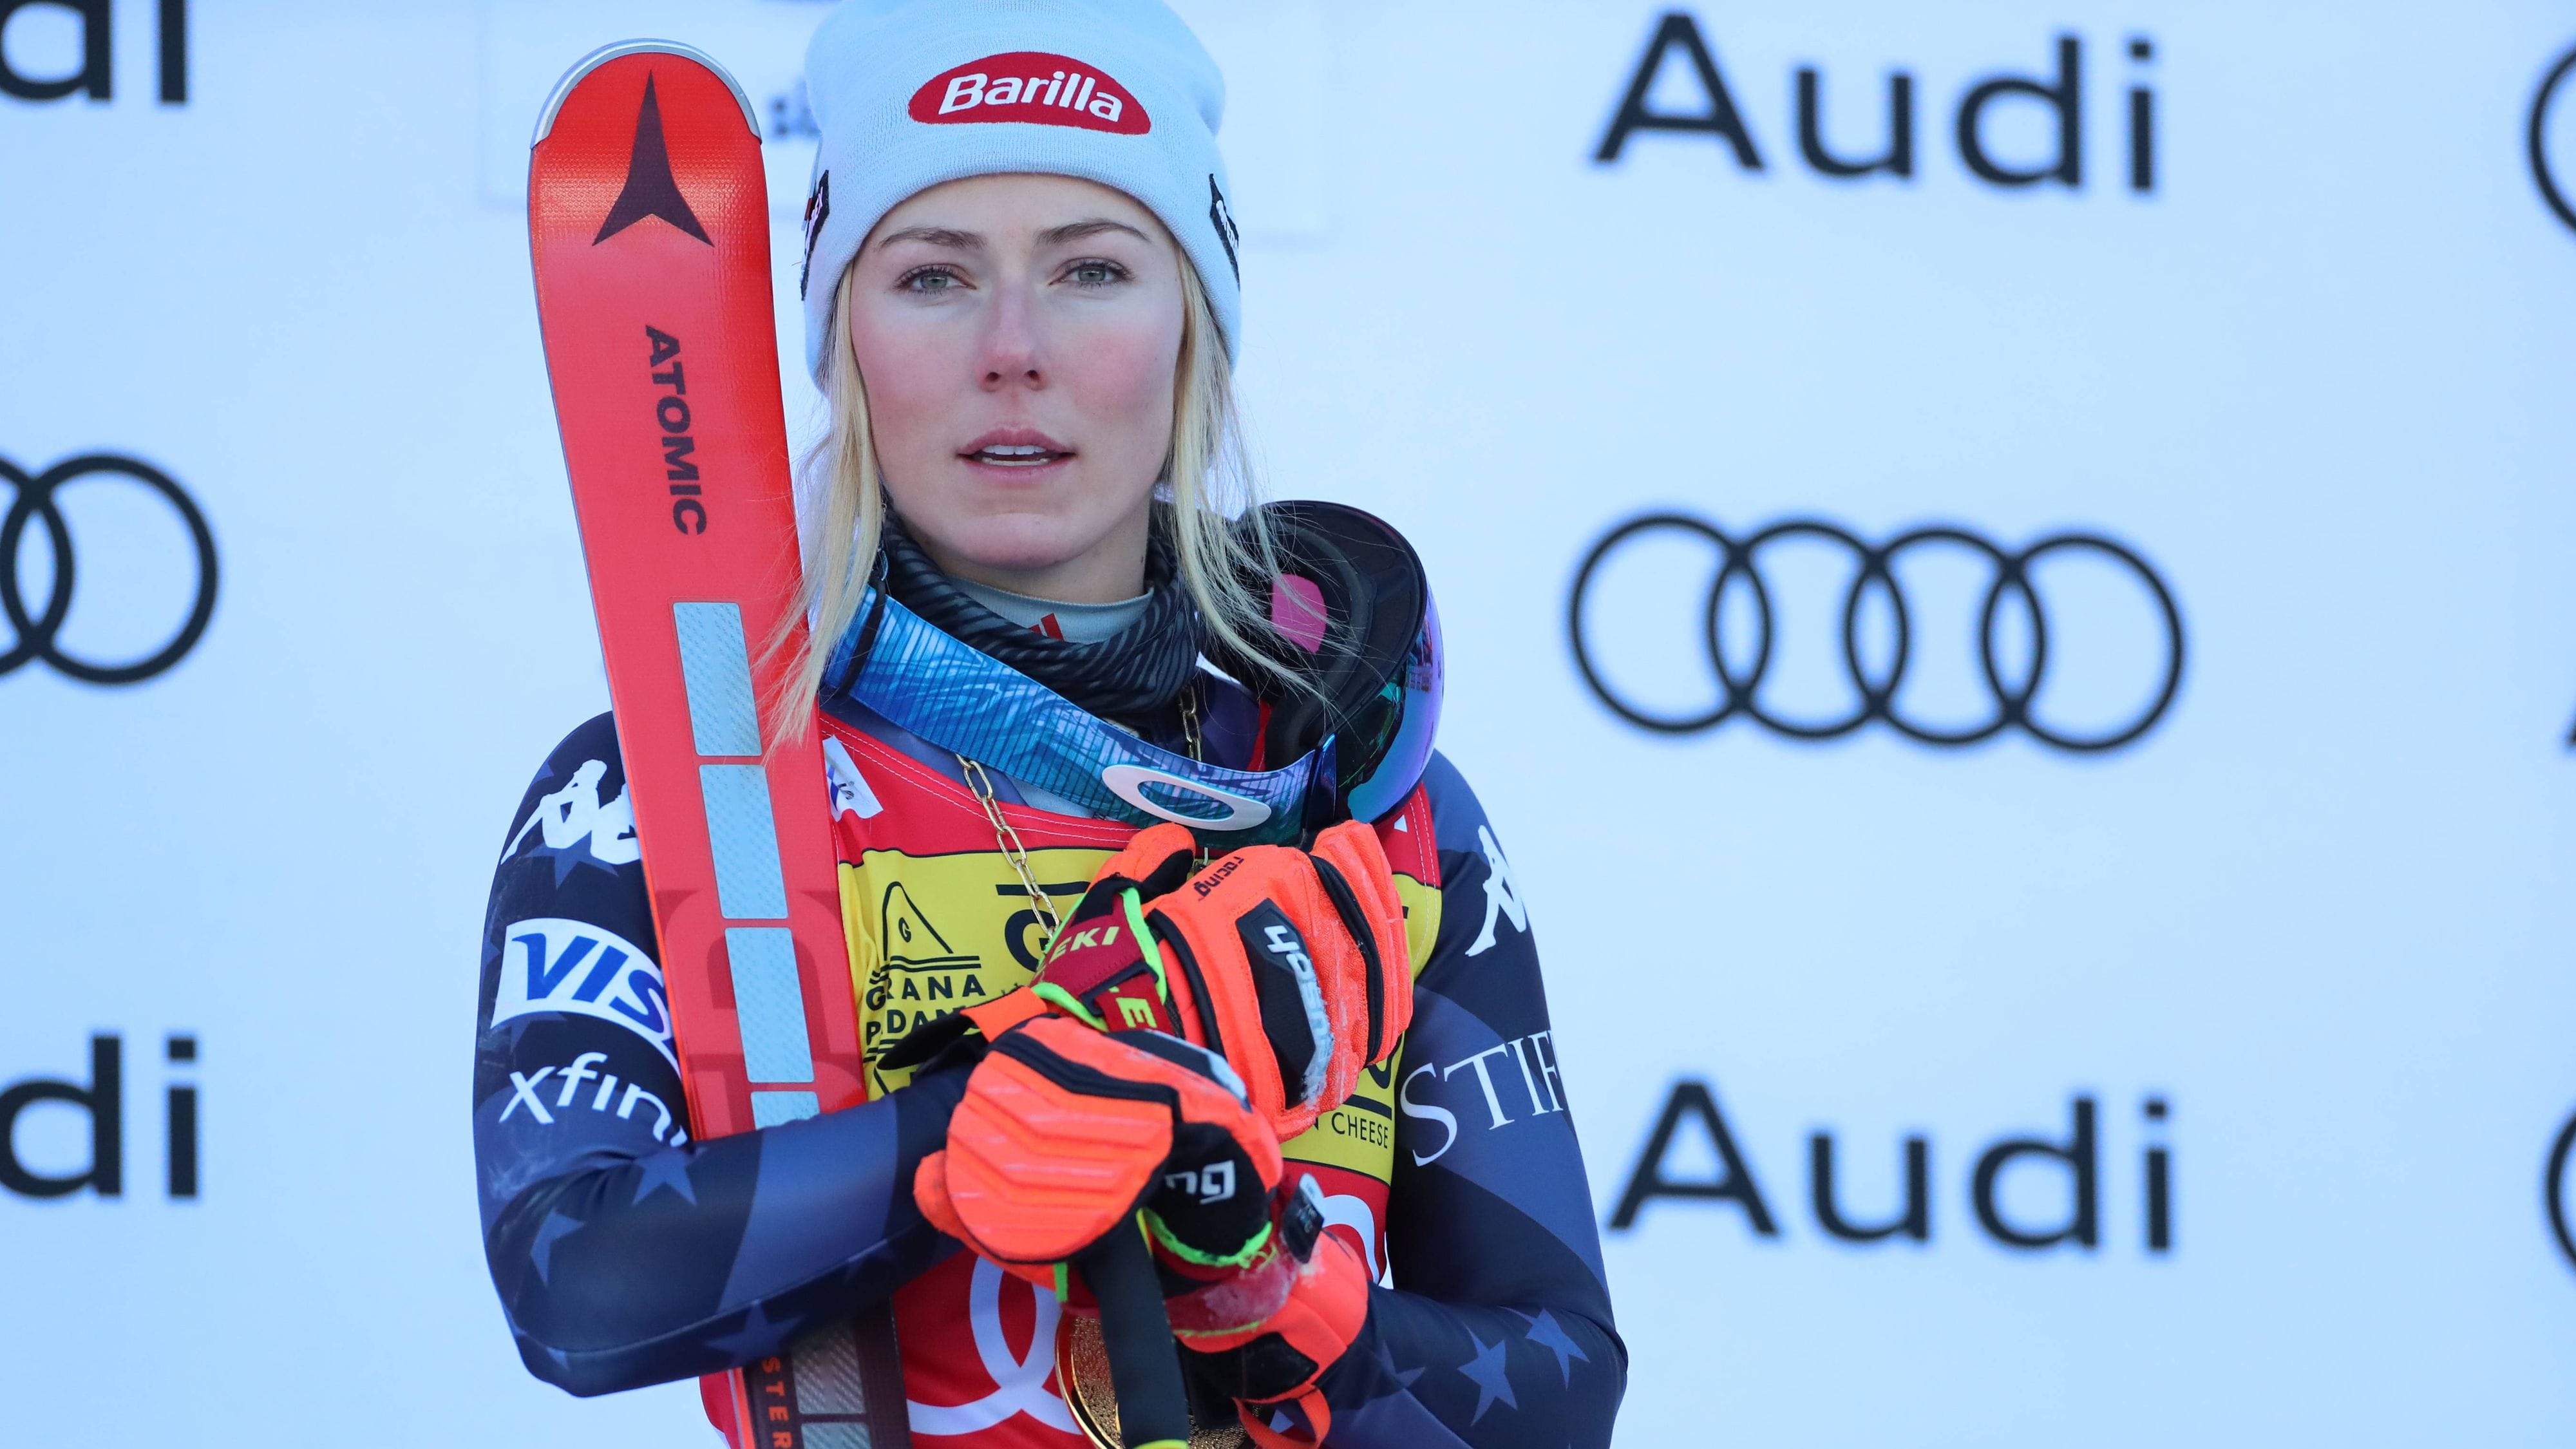 Peinliche Panne bei Ski Alpin-Weltcup: Mikaela Shiffrin wird falsch übersetzt